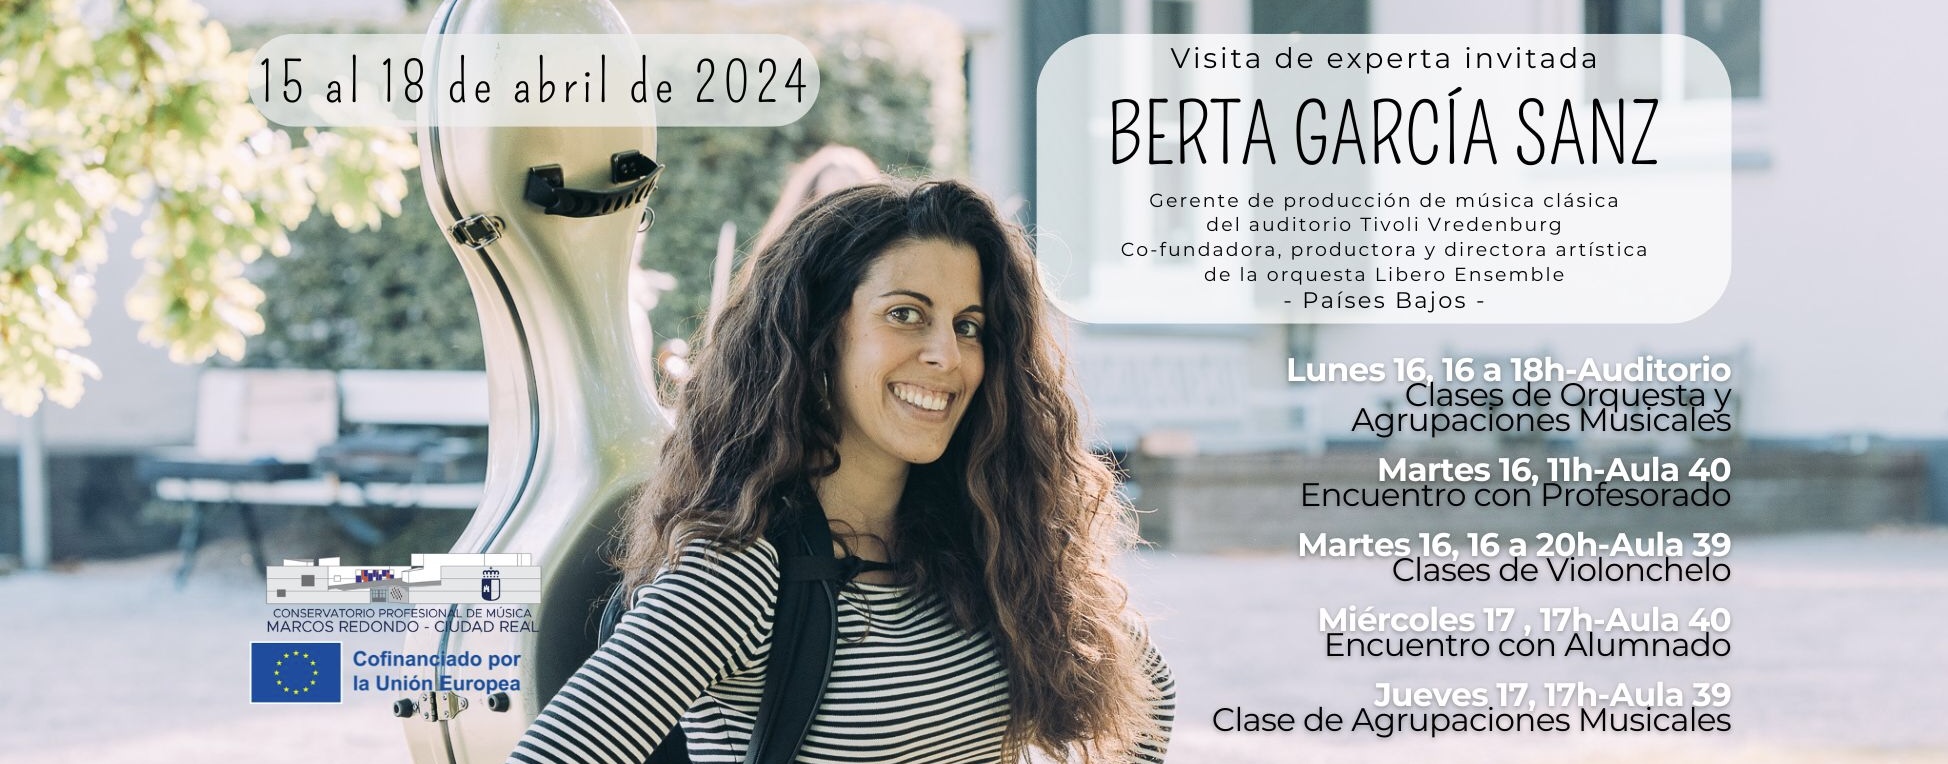 Visita de experta invitada Erasmus+: Berta García Sanz. 16 al 18 de abril.